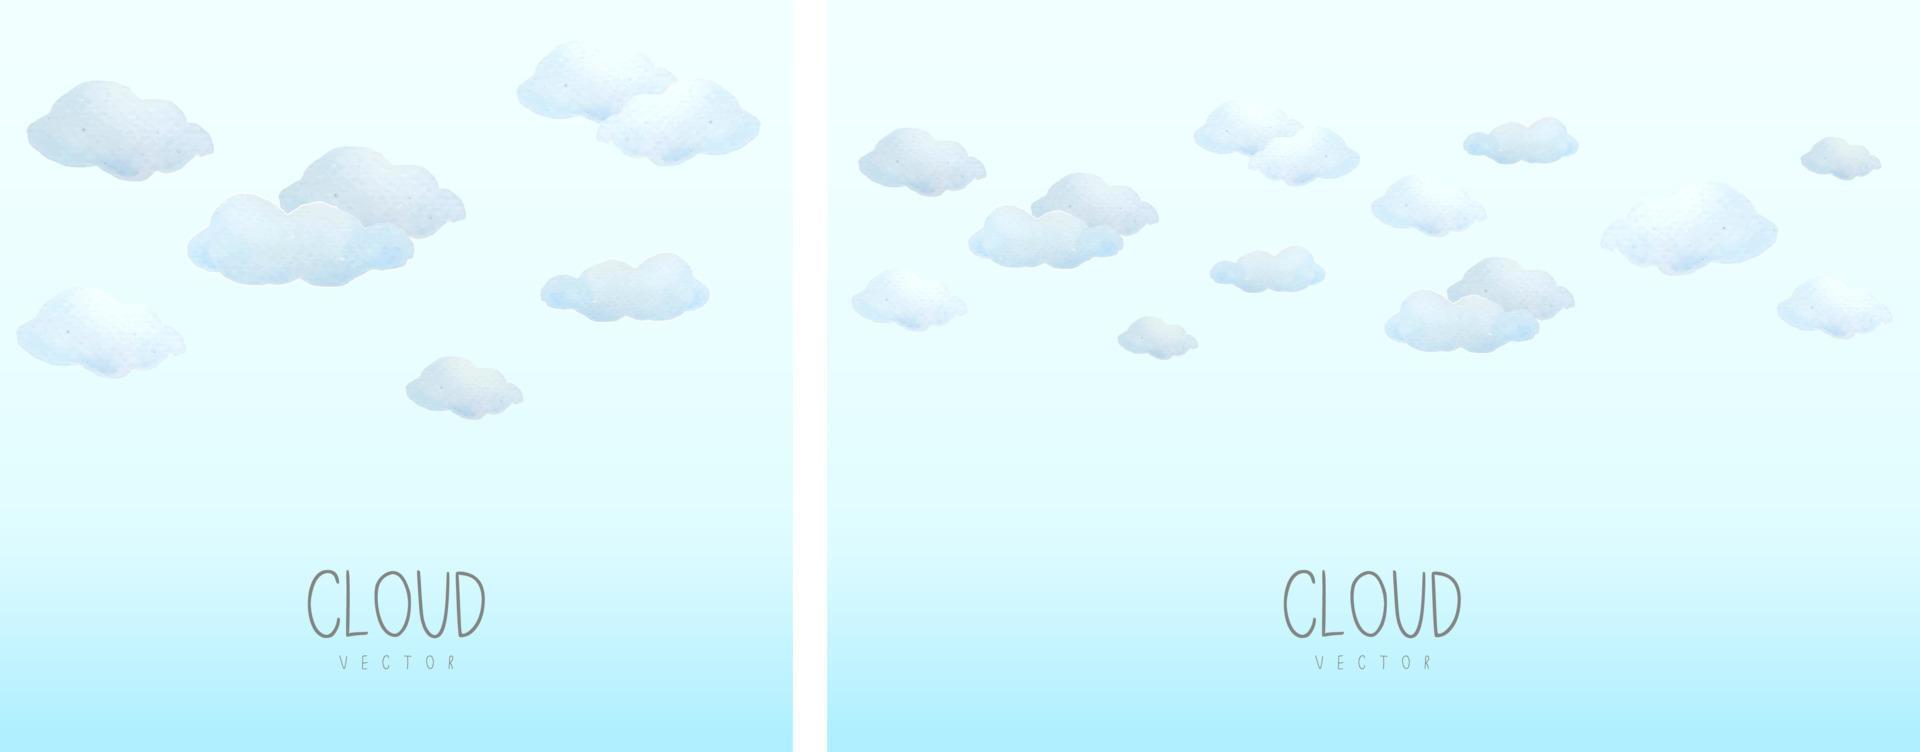 le nuage est peint à l'aquarelle sur fond dégradé bleu. le nuage est de style dessin animé et a l'air mignon. vecteur